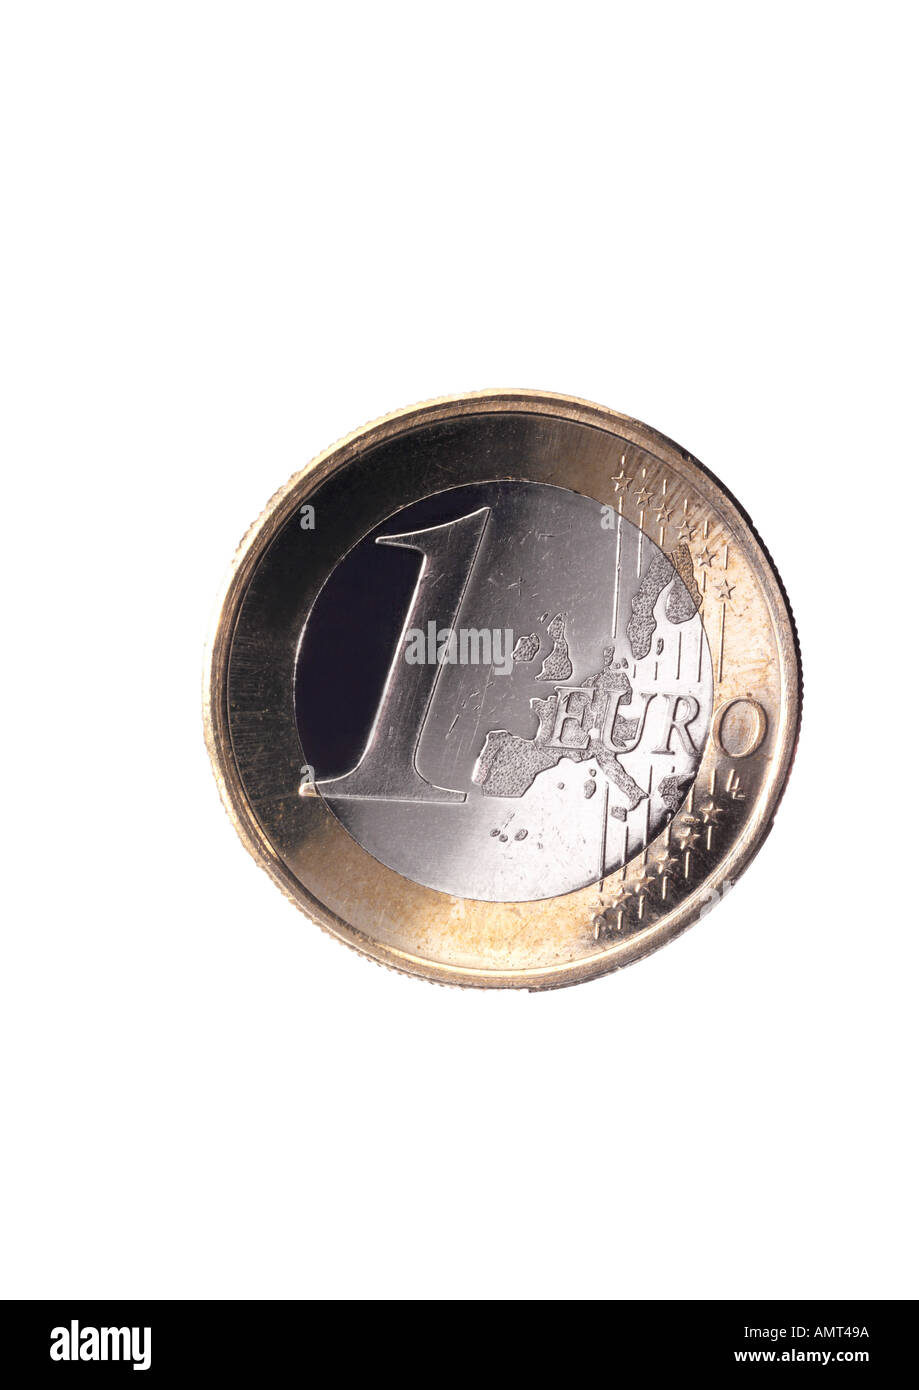 Moneta da 1 euro immagini e fotografie stock ad alta risoluzione - Alamy